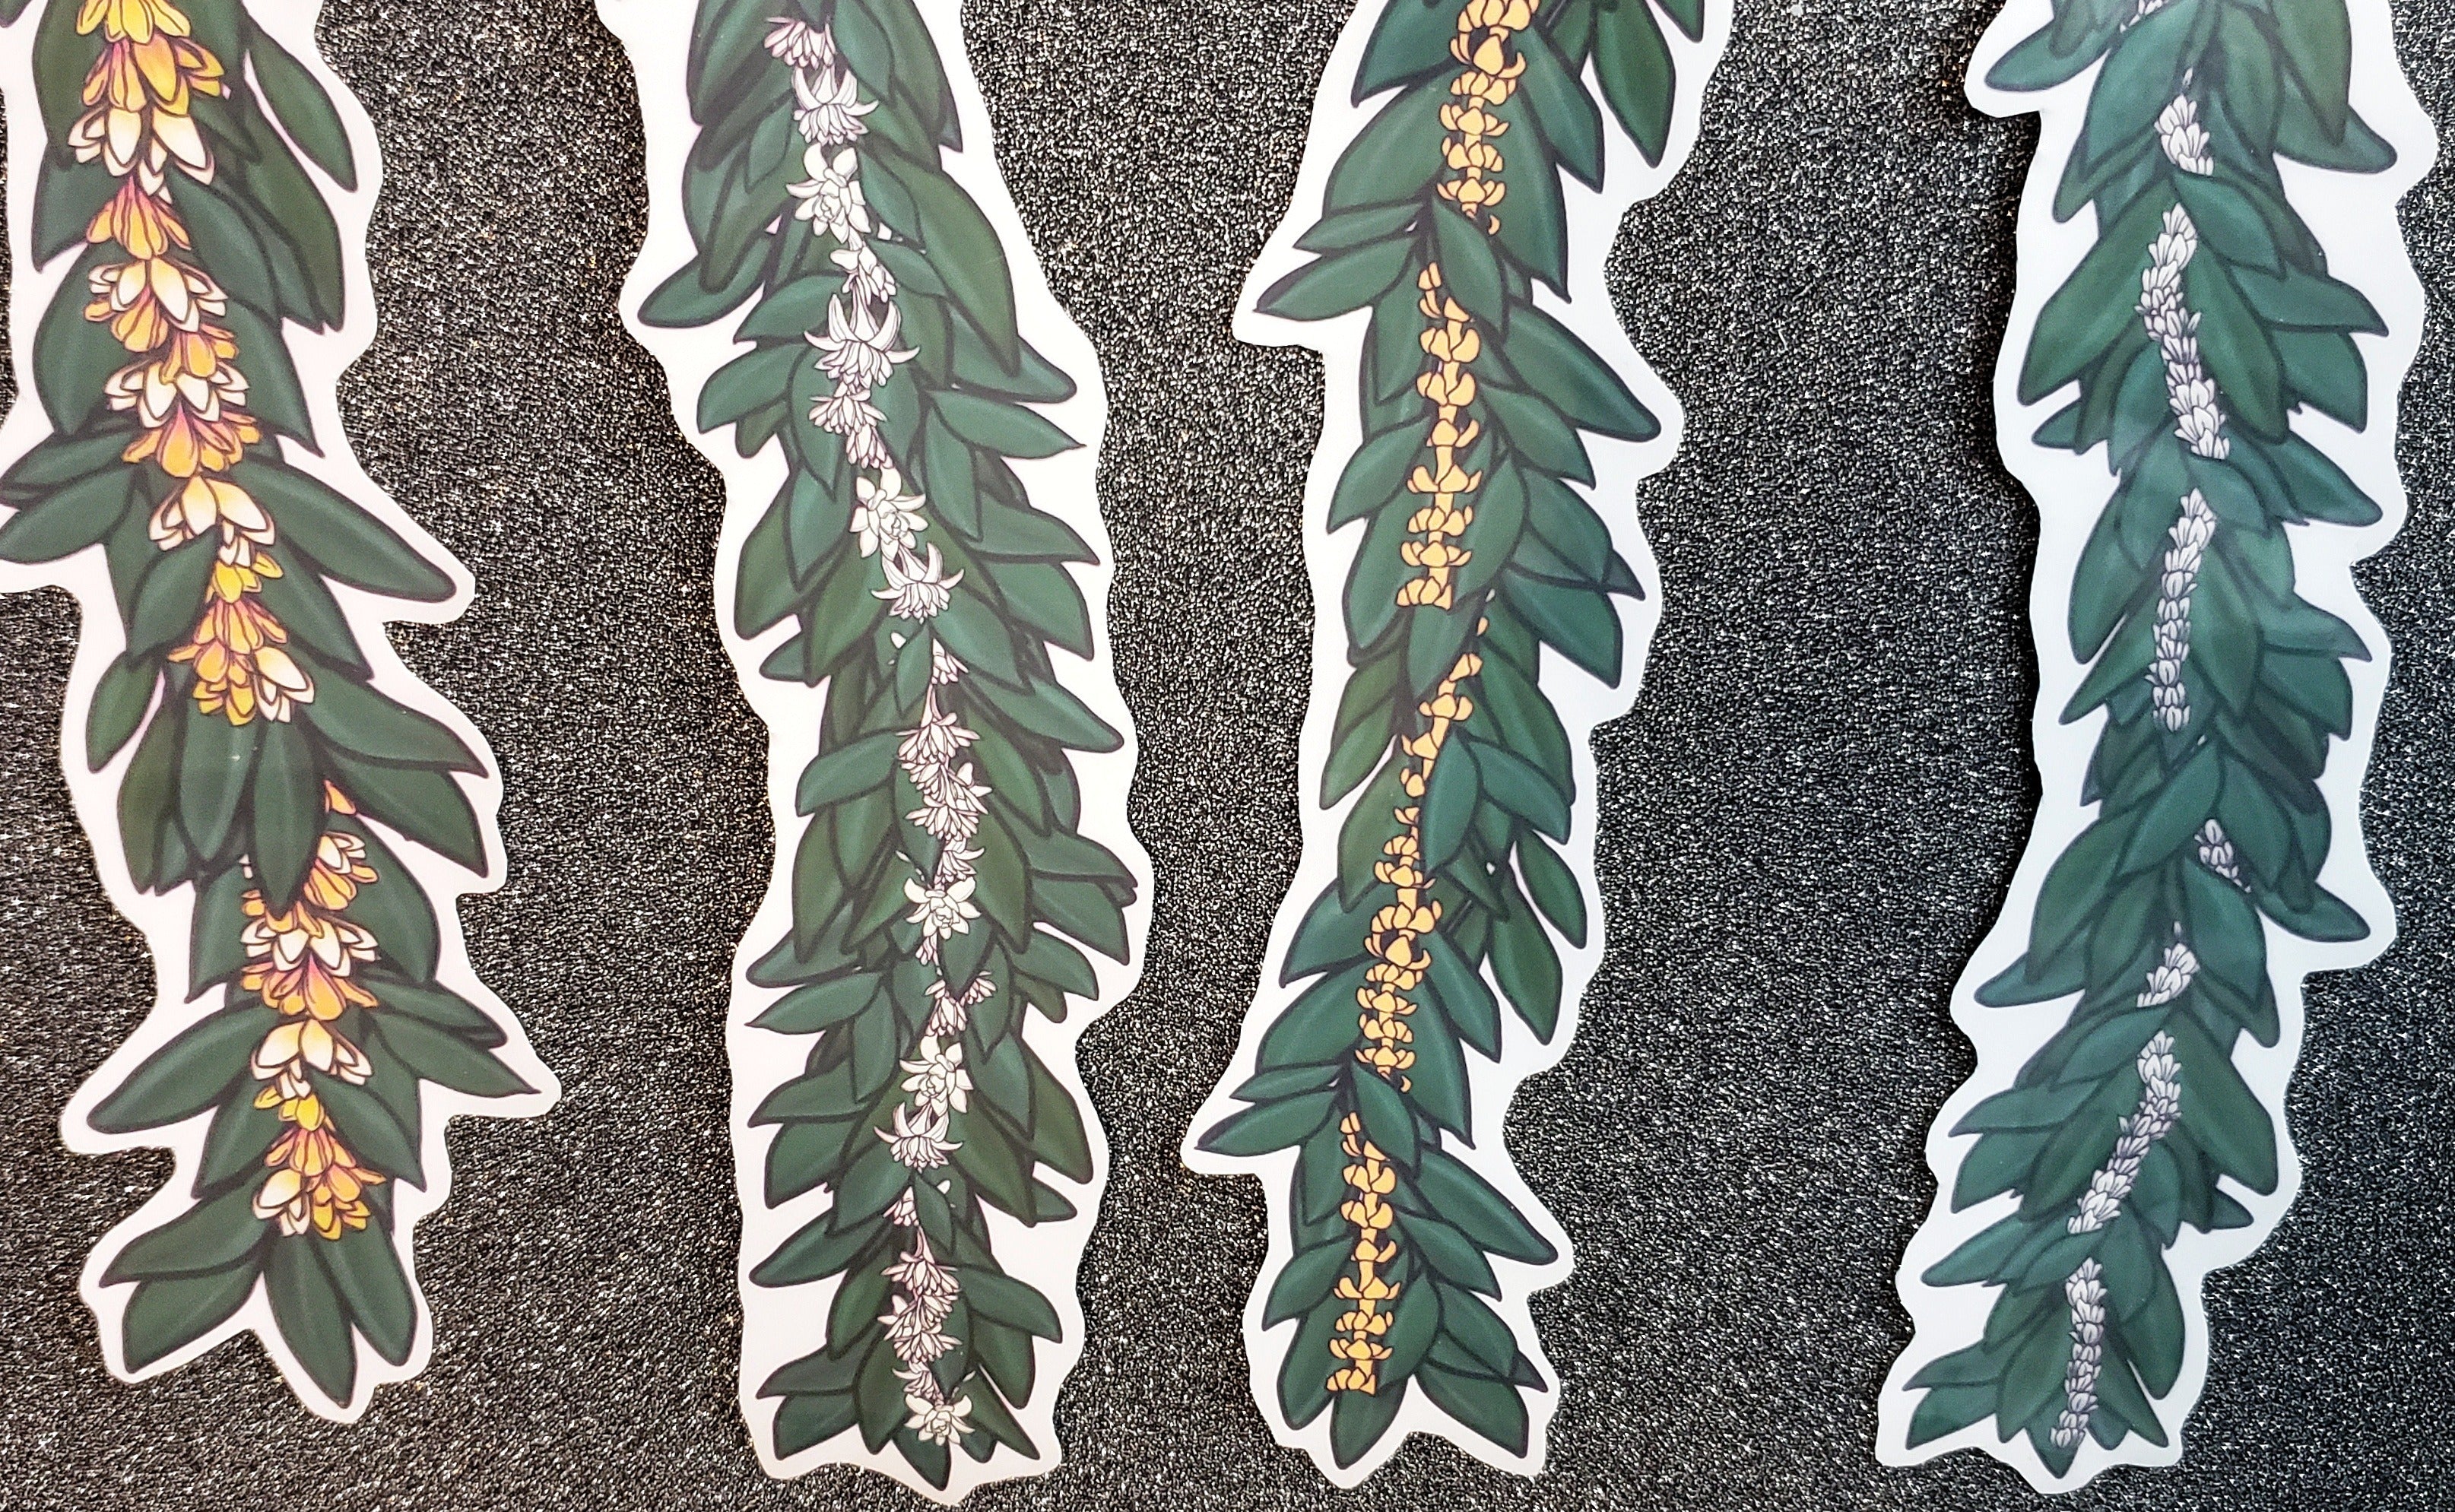 Lei Vinyl Sticker - You Choose:  Pakalana, Haku, Crown flower, Plumeria, Tuberose, Puakenikeni, Pikake - Hand-drawn, illustrated designs.